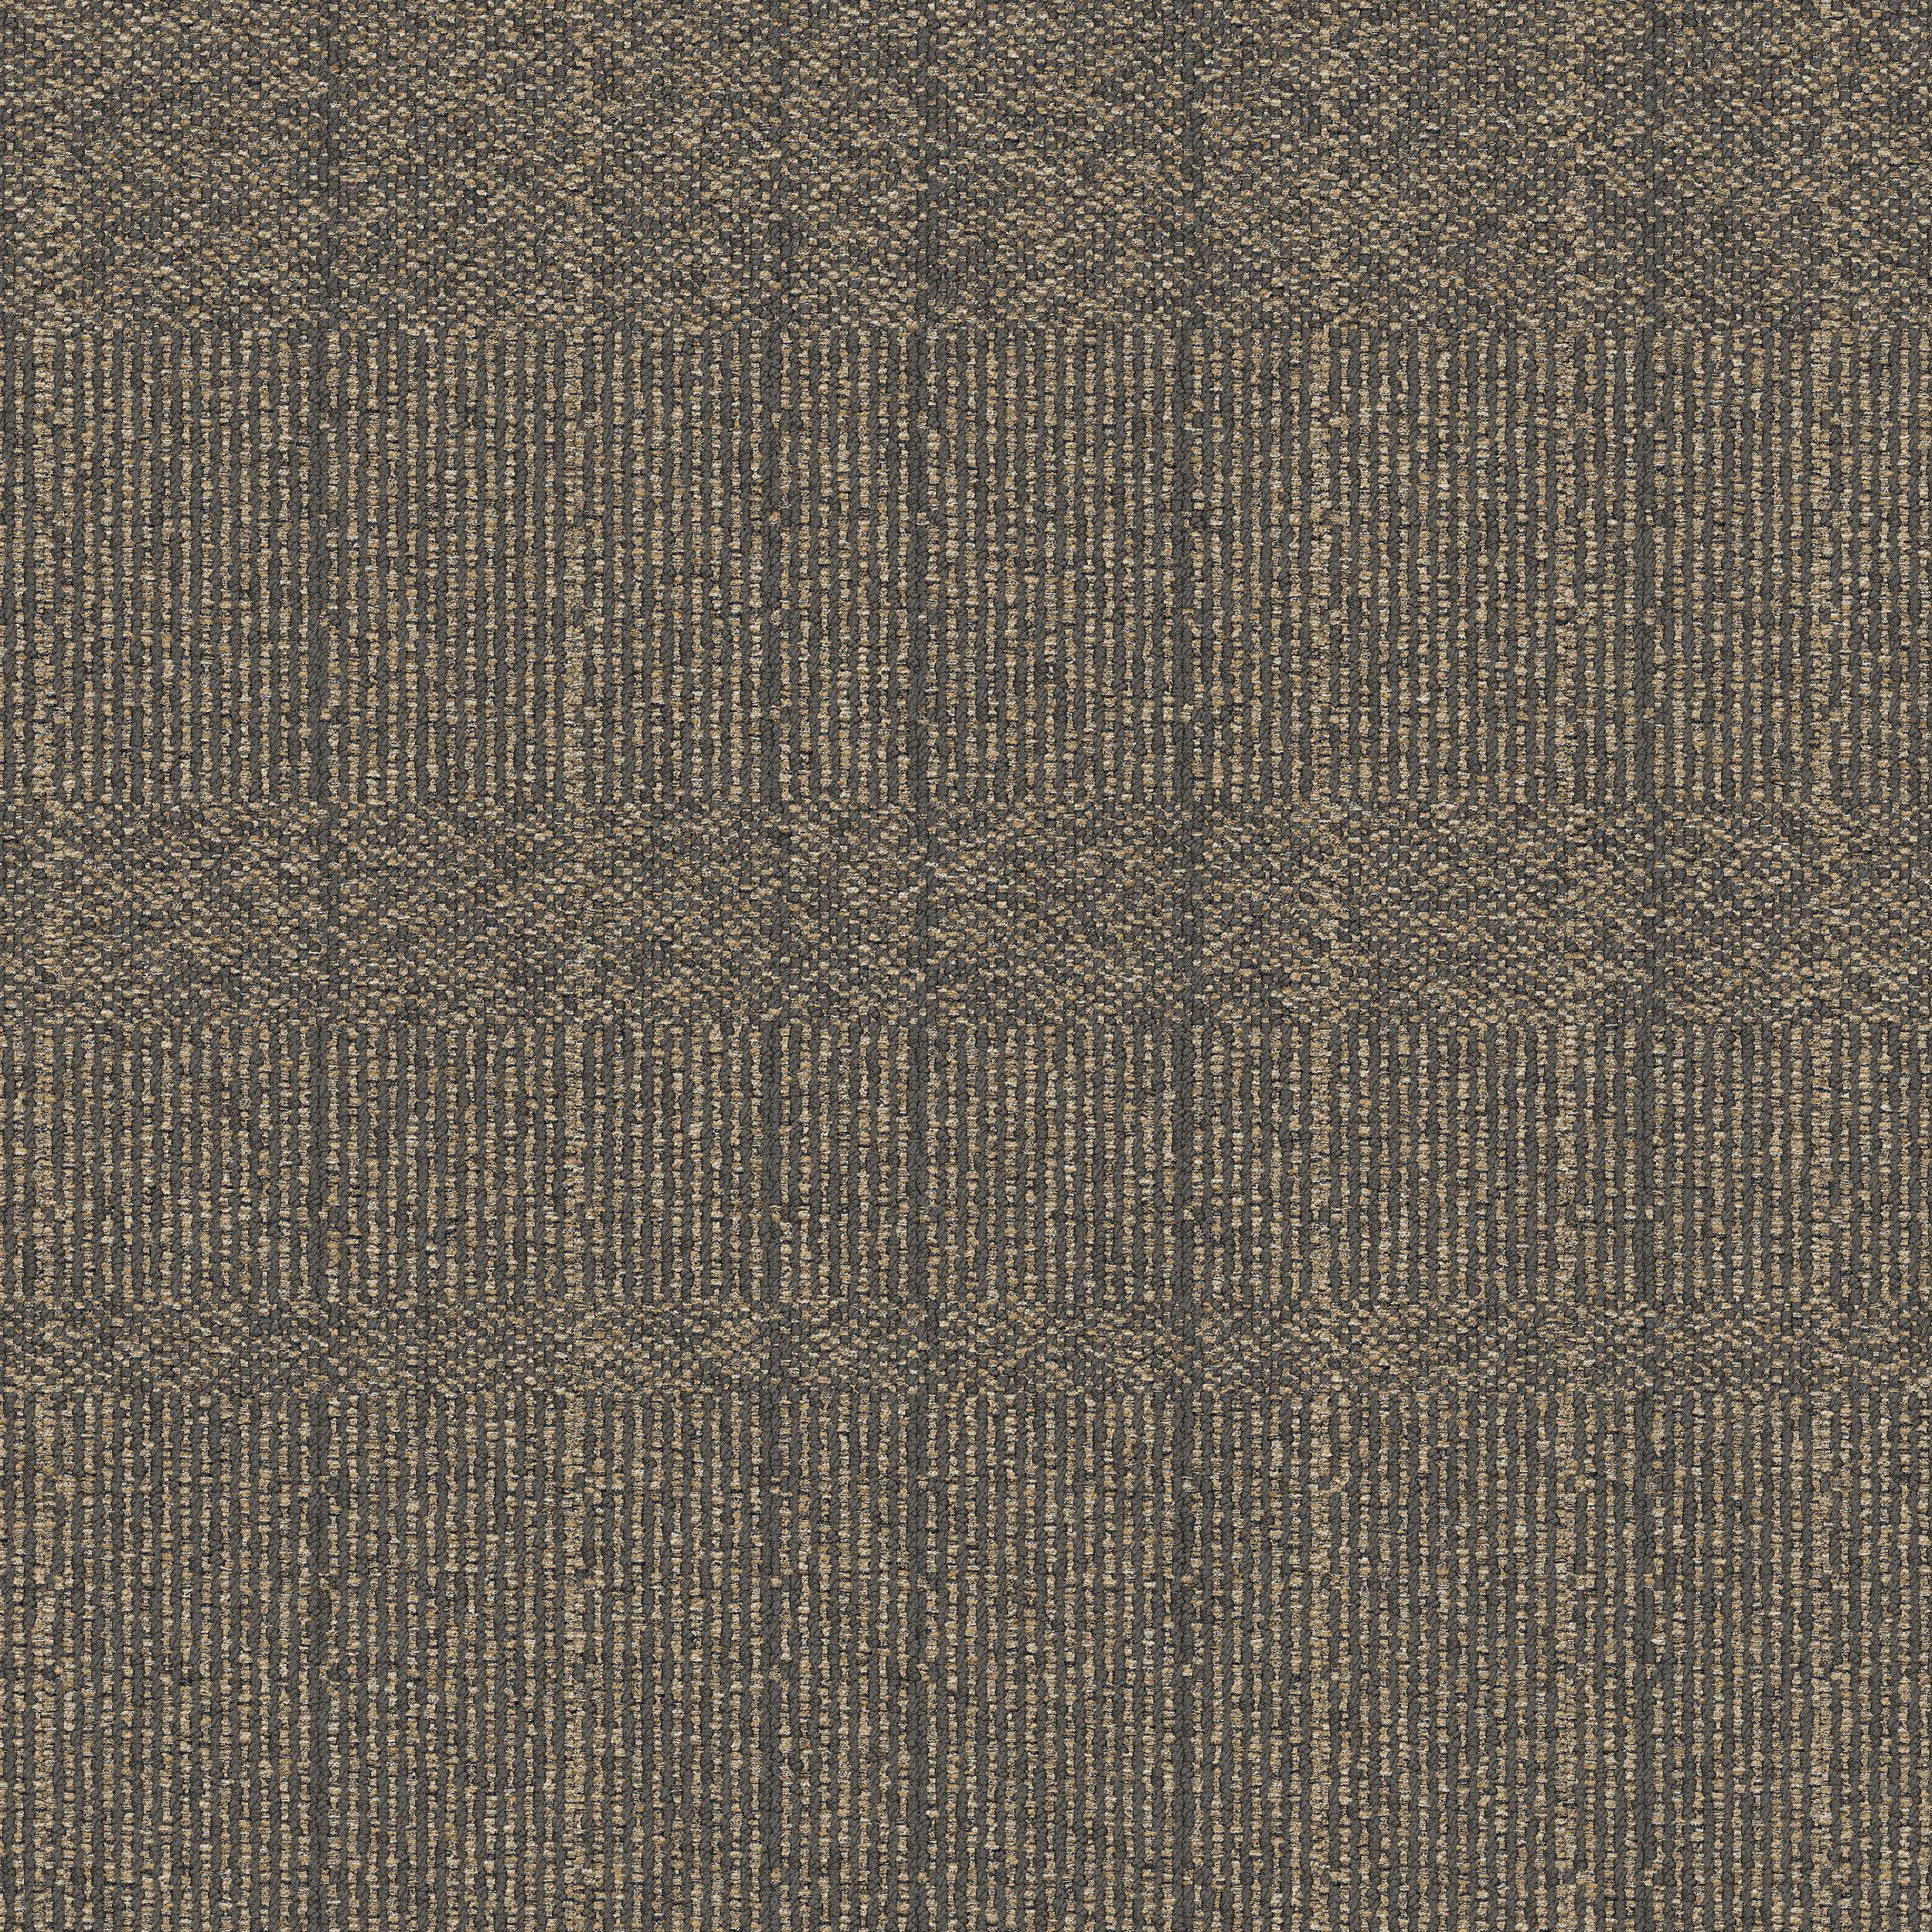 Old Street Carpet Tile In Concrete Grid número de imagen 2